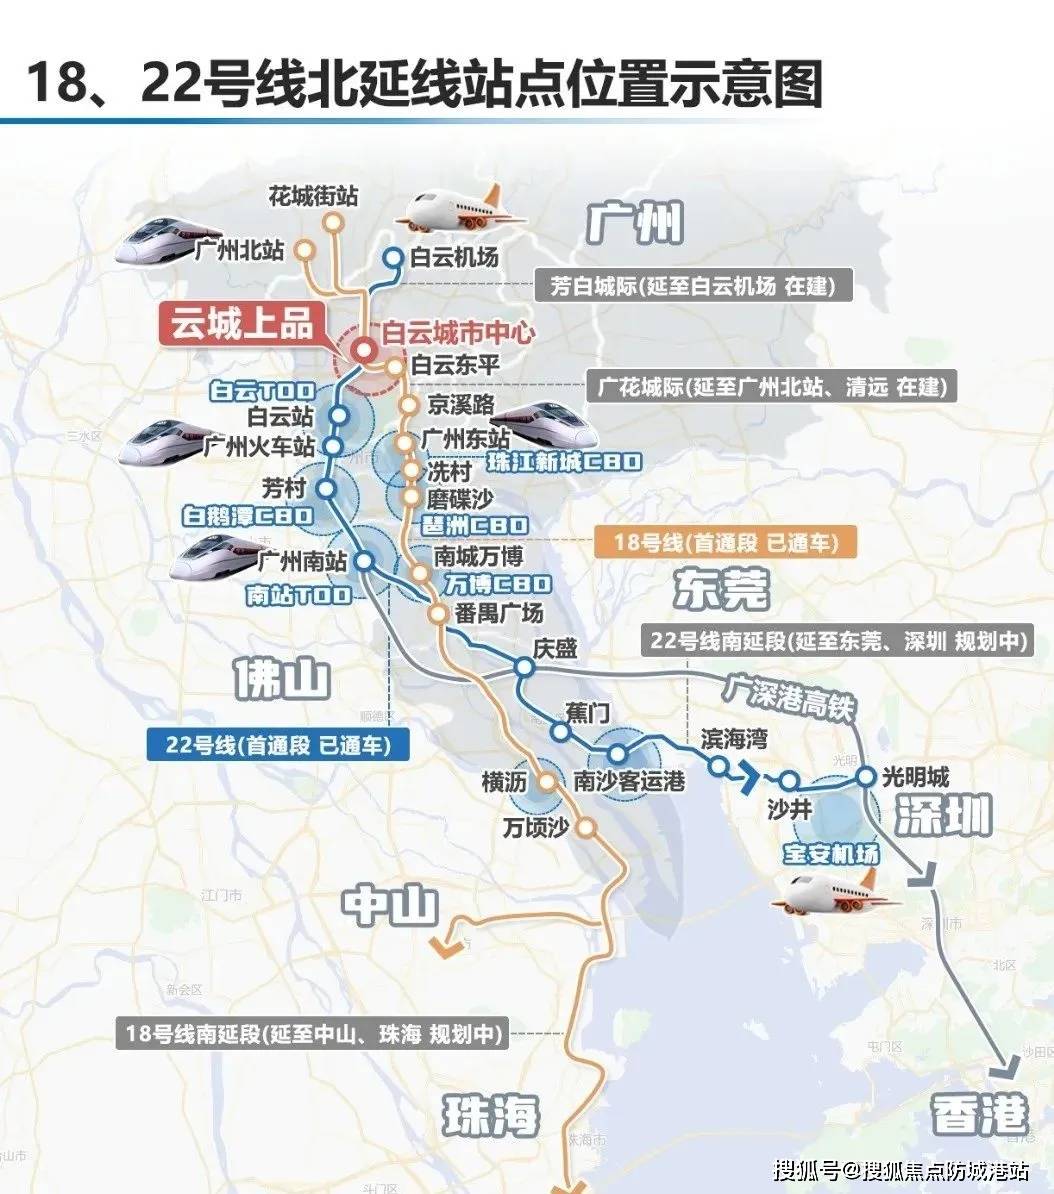 核心枢纽广州地铁18号线,对外链接大湾区西部,对内链接广州cbd区域